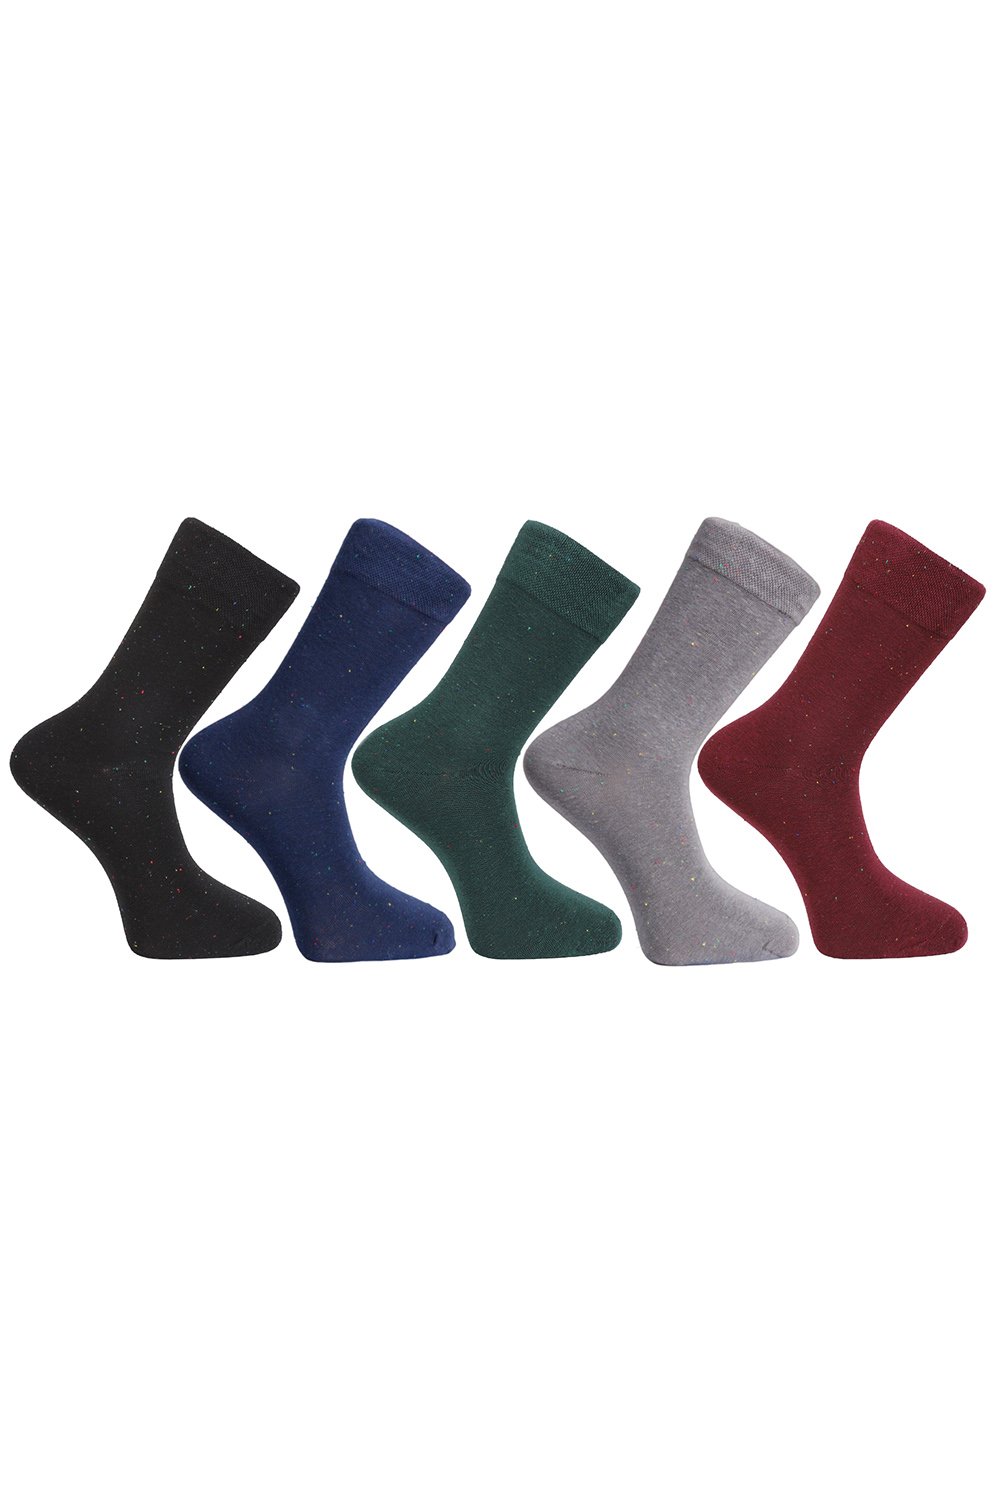 5 PACK Pánských ponožek Moraj CMLB500-002 - mix barev Mix barev 39-42